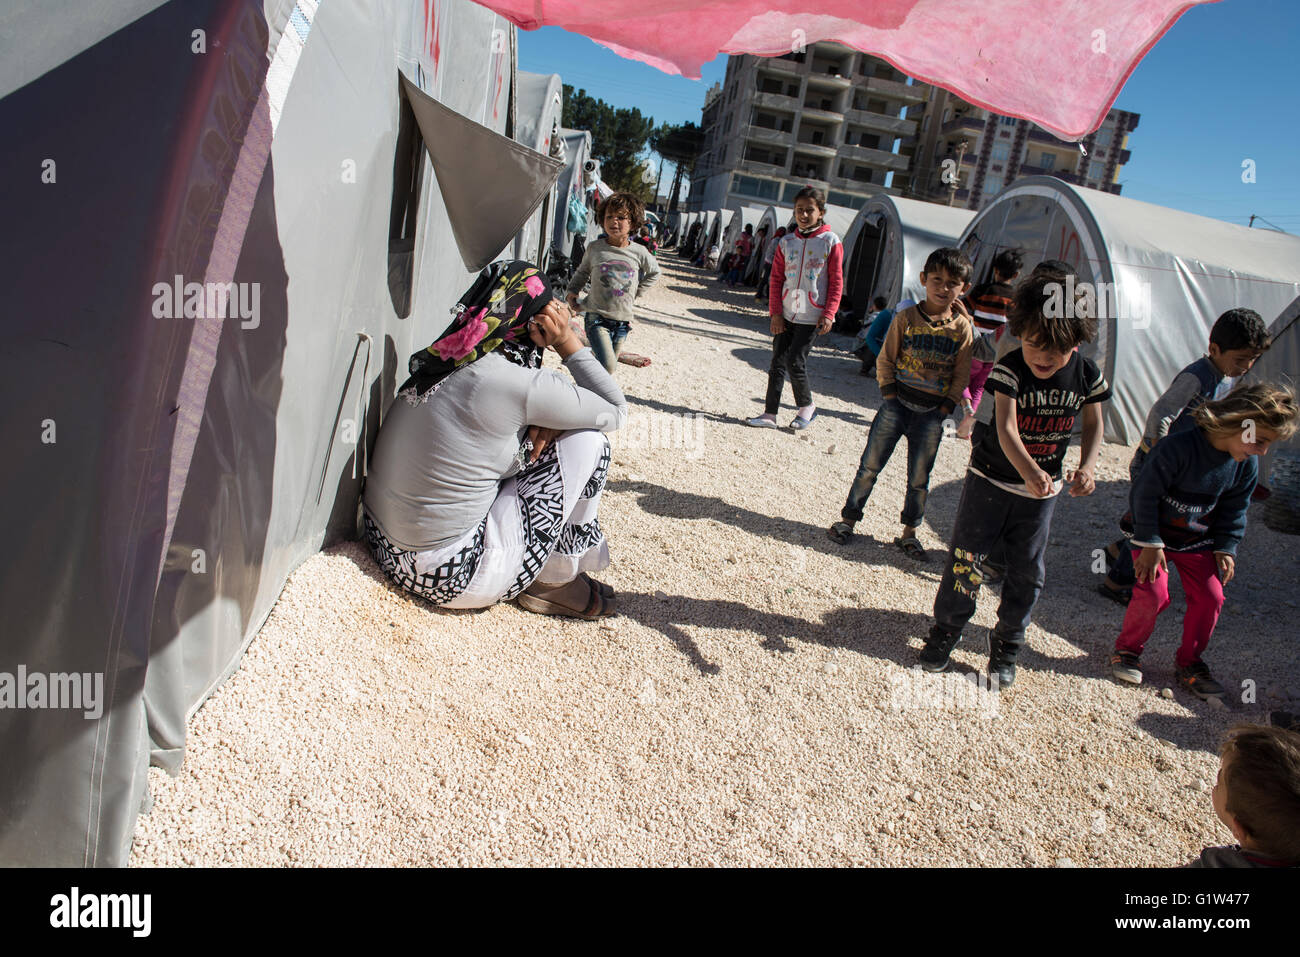 Rifugiati curdi i bambini in un campo di rifugiati nella città turca di Suruc, vicino al confine Turkish-Syrian. Migliaia di curdi che erano stati costretti ad abbandonare la città siriana di Kobani, che è sotto assedio da parte di uno Stato islamico forze. La maggior parte di loro vivono in campi per rifugiati nella città turca di Suruc. Foto Stock